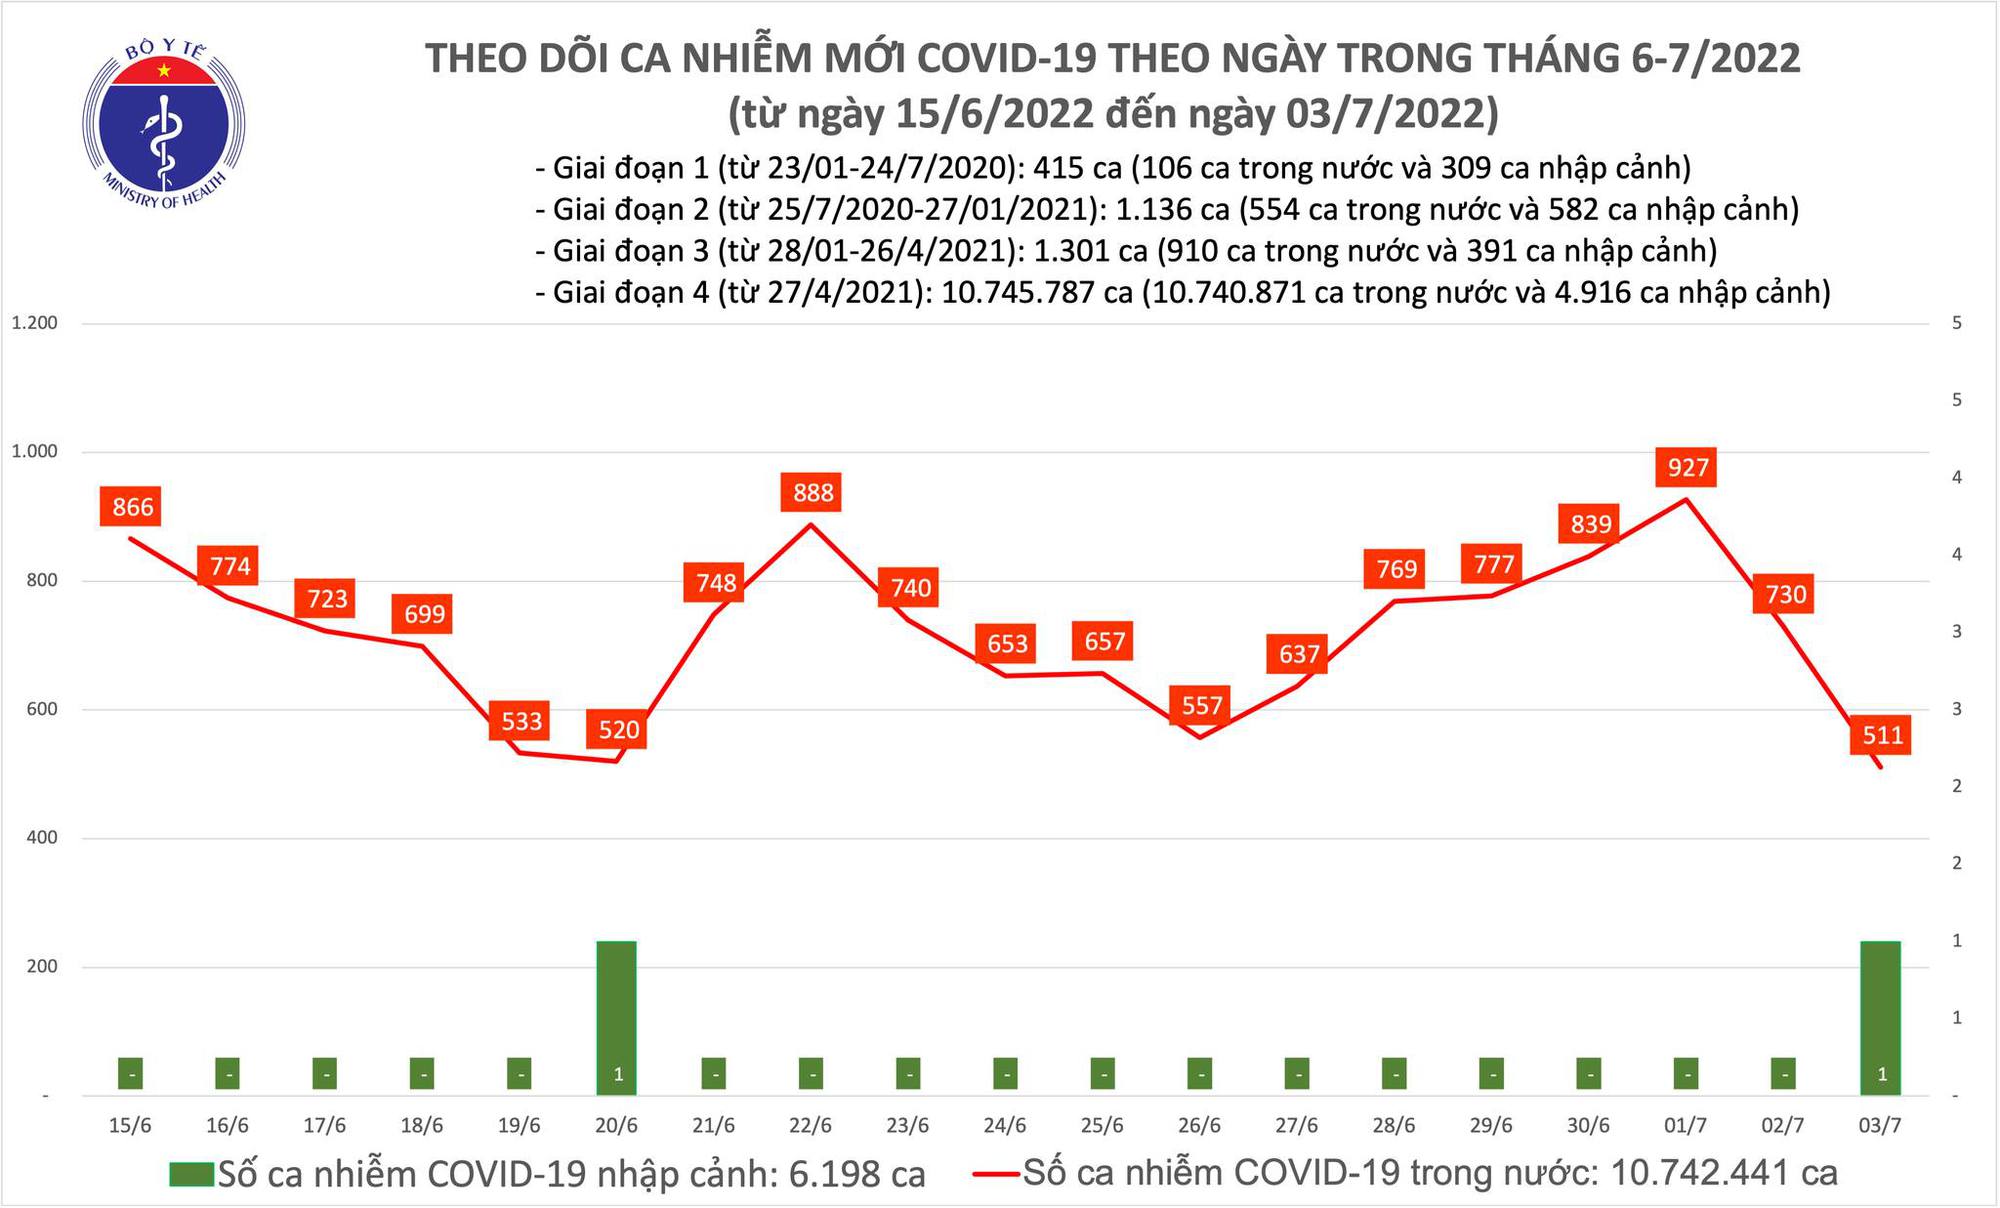 Ngày 3/7: Ca mắc COVID-19 giảm mạnh còn 511, thấp nhất trong 12 tháng qua